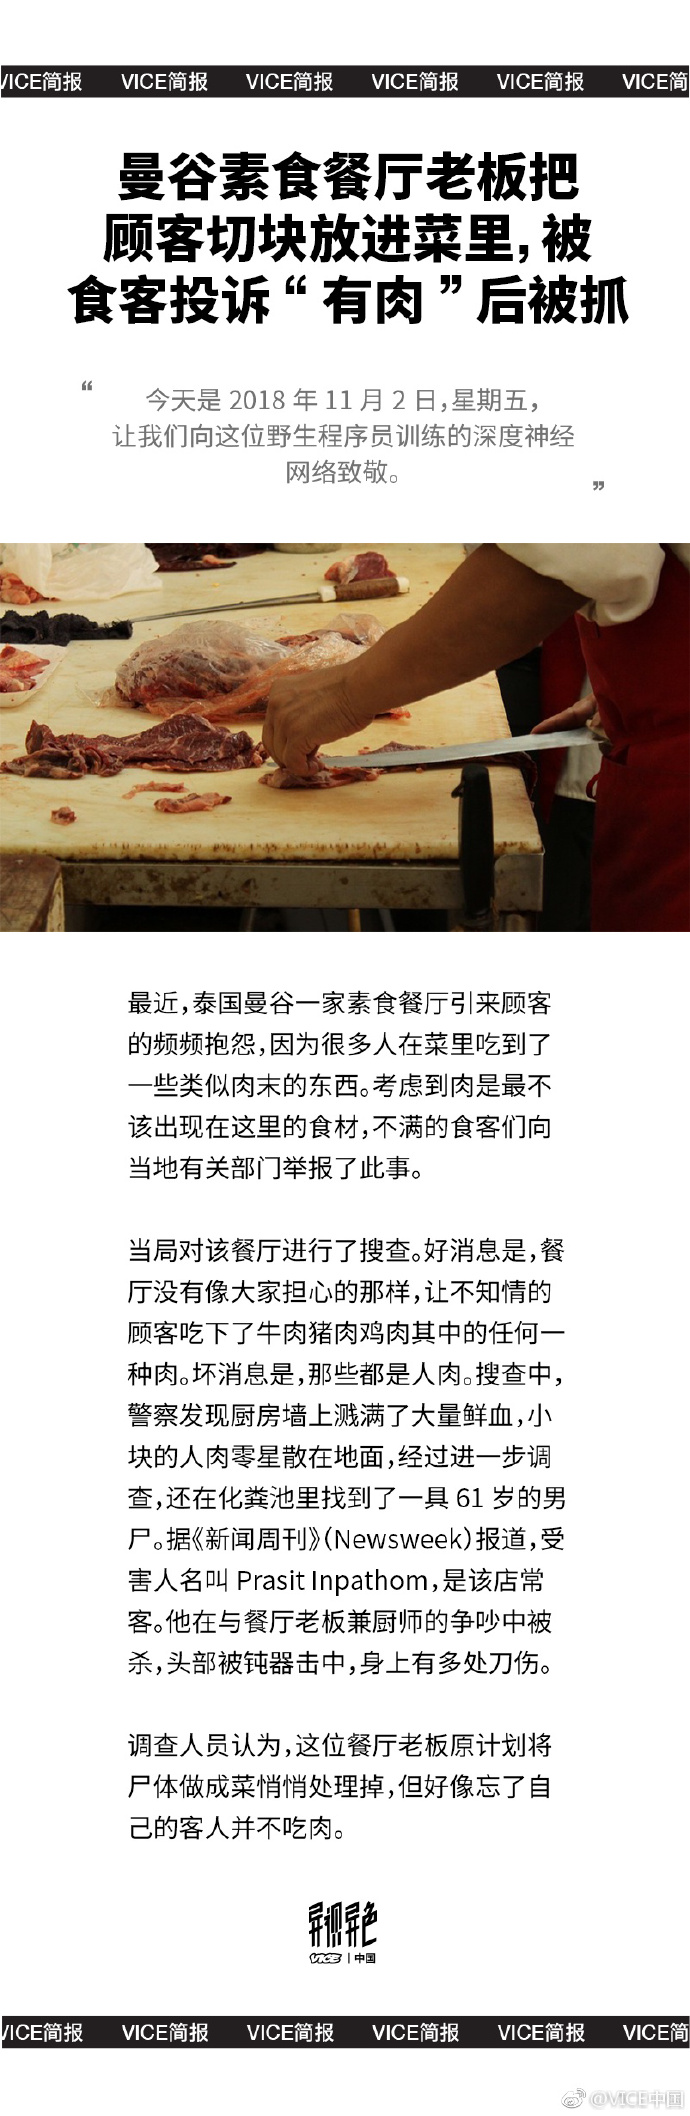 谷素食餐厅老板把顾客切块放进菜里，被食客投诉 “有肉” 后被抓。